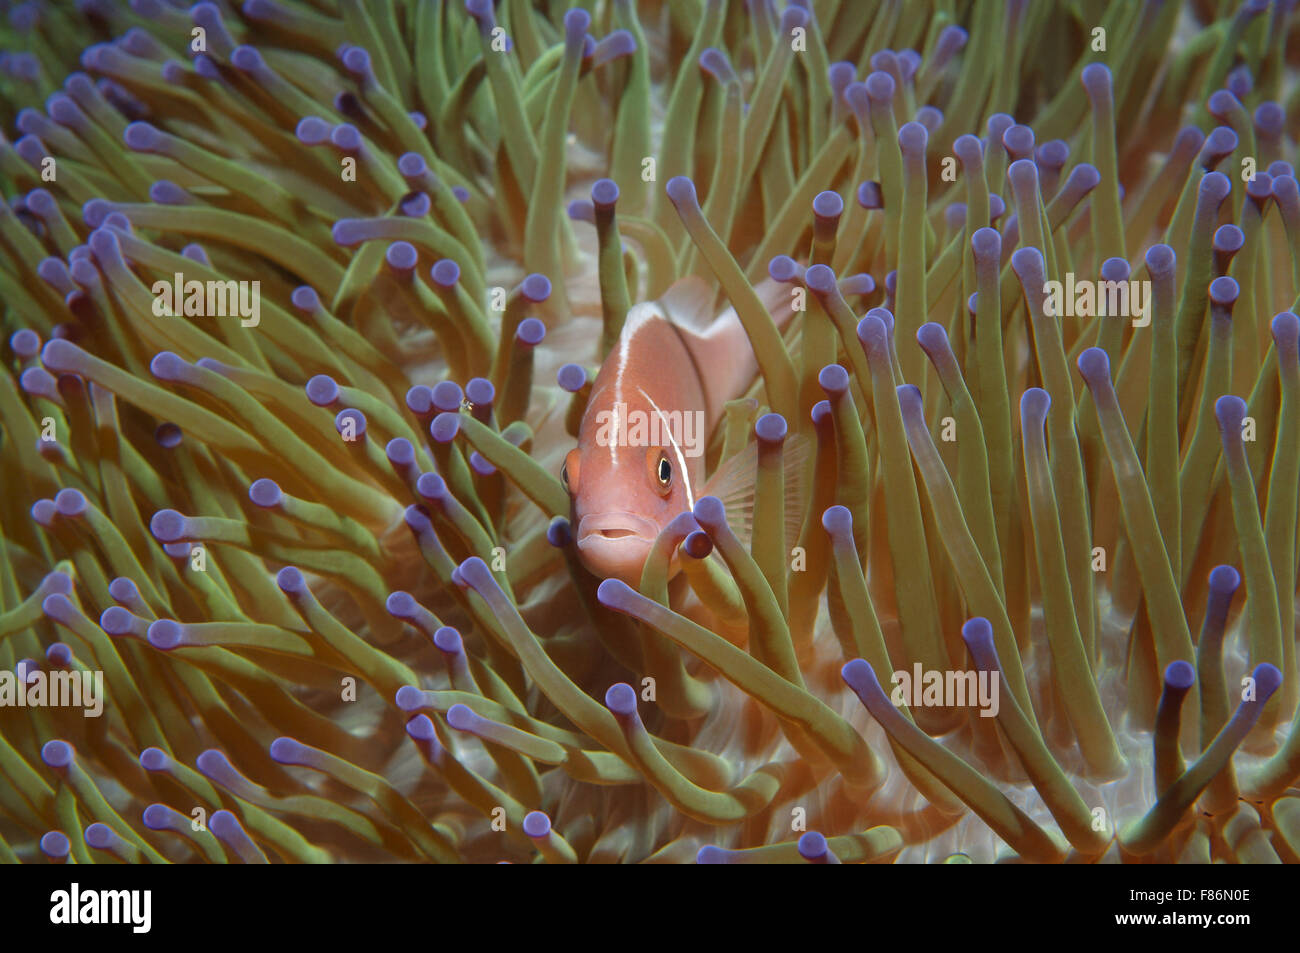 Oct. 15, 2014 - South China Sea, Malaysia - Pink skunk clownfish or pink anemonefish (Amphiprion perideraion) South China Sea, Redang, Malaysia, Asia (Credit Image: © Andrey Nekrasov/ZUMA Wire/ZUMAPRESS.com) Stock Photo